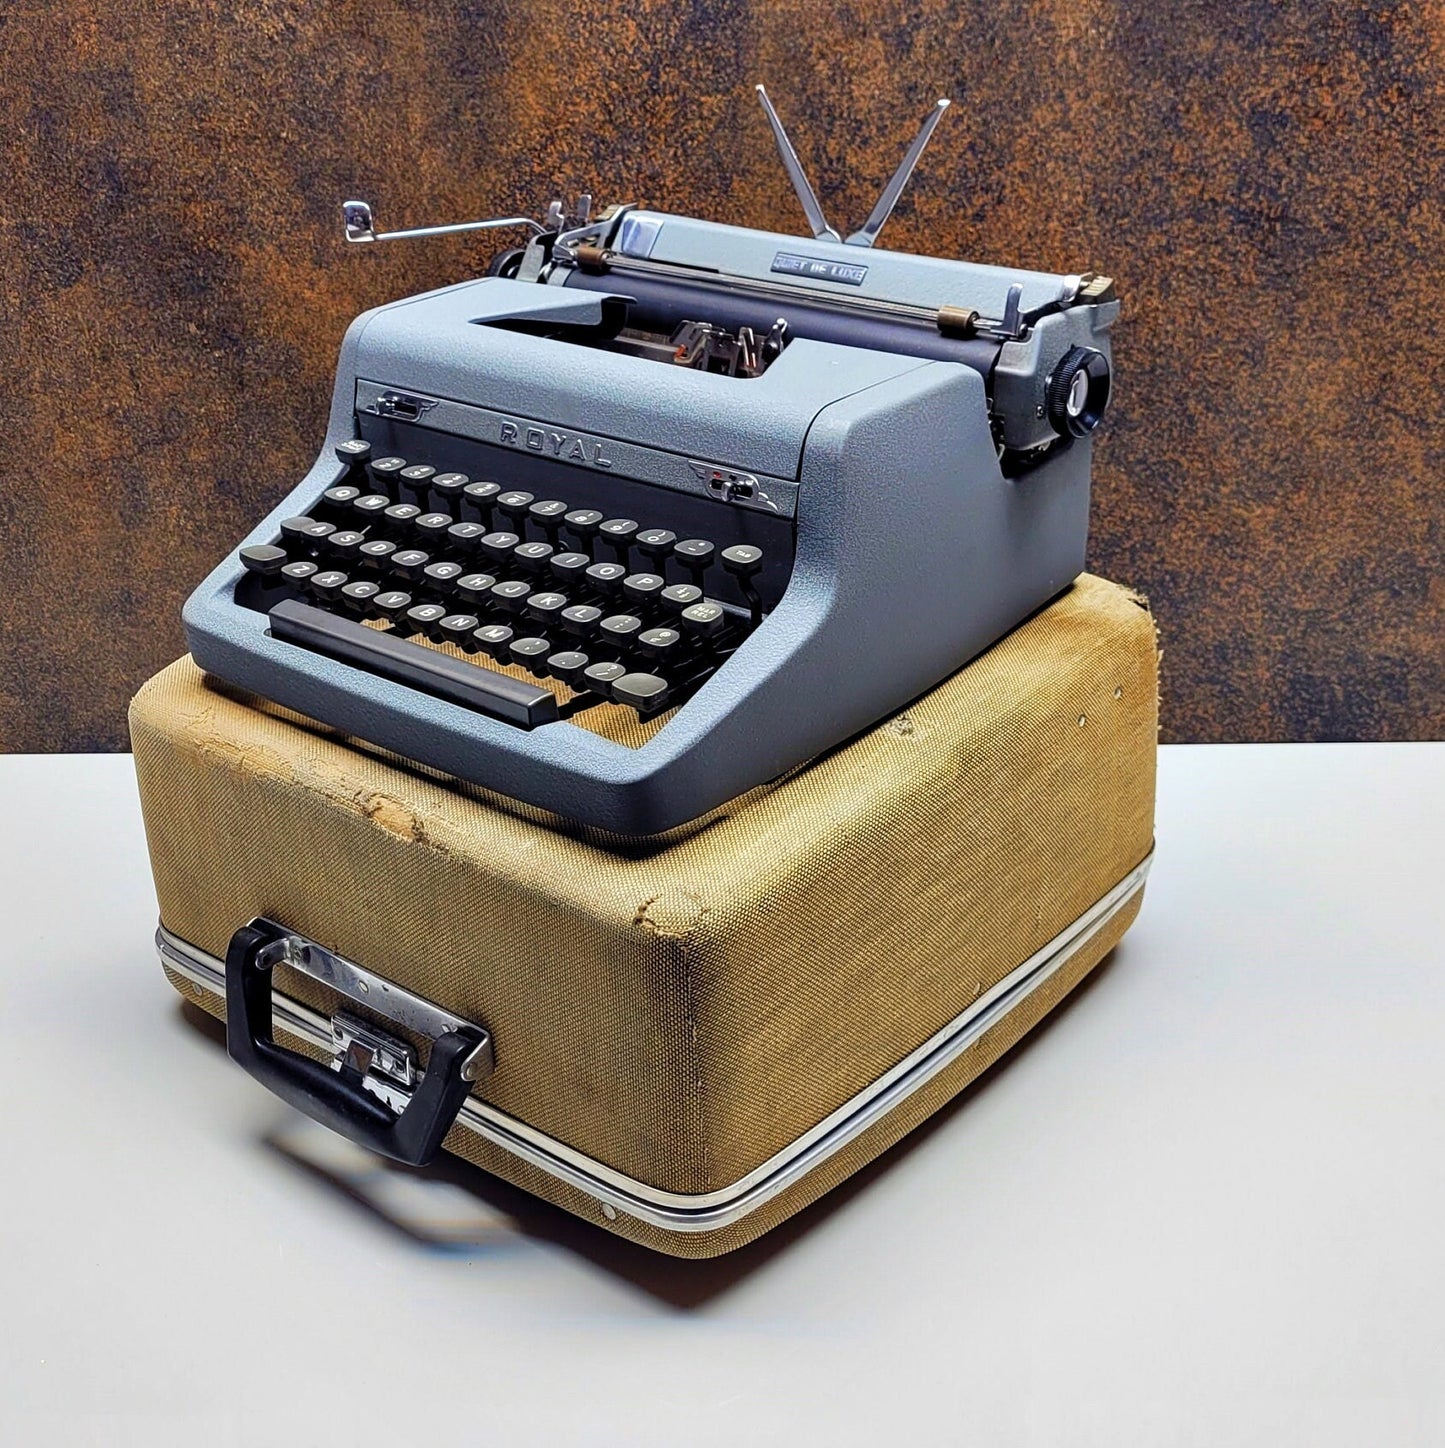 The Retro Royal Typewriter - A Unique QWERTY Typewriter,typewriter working